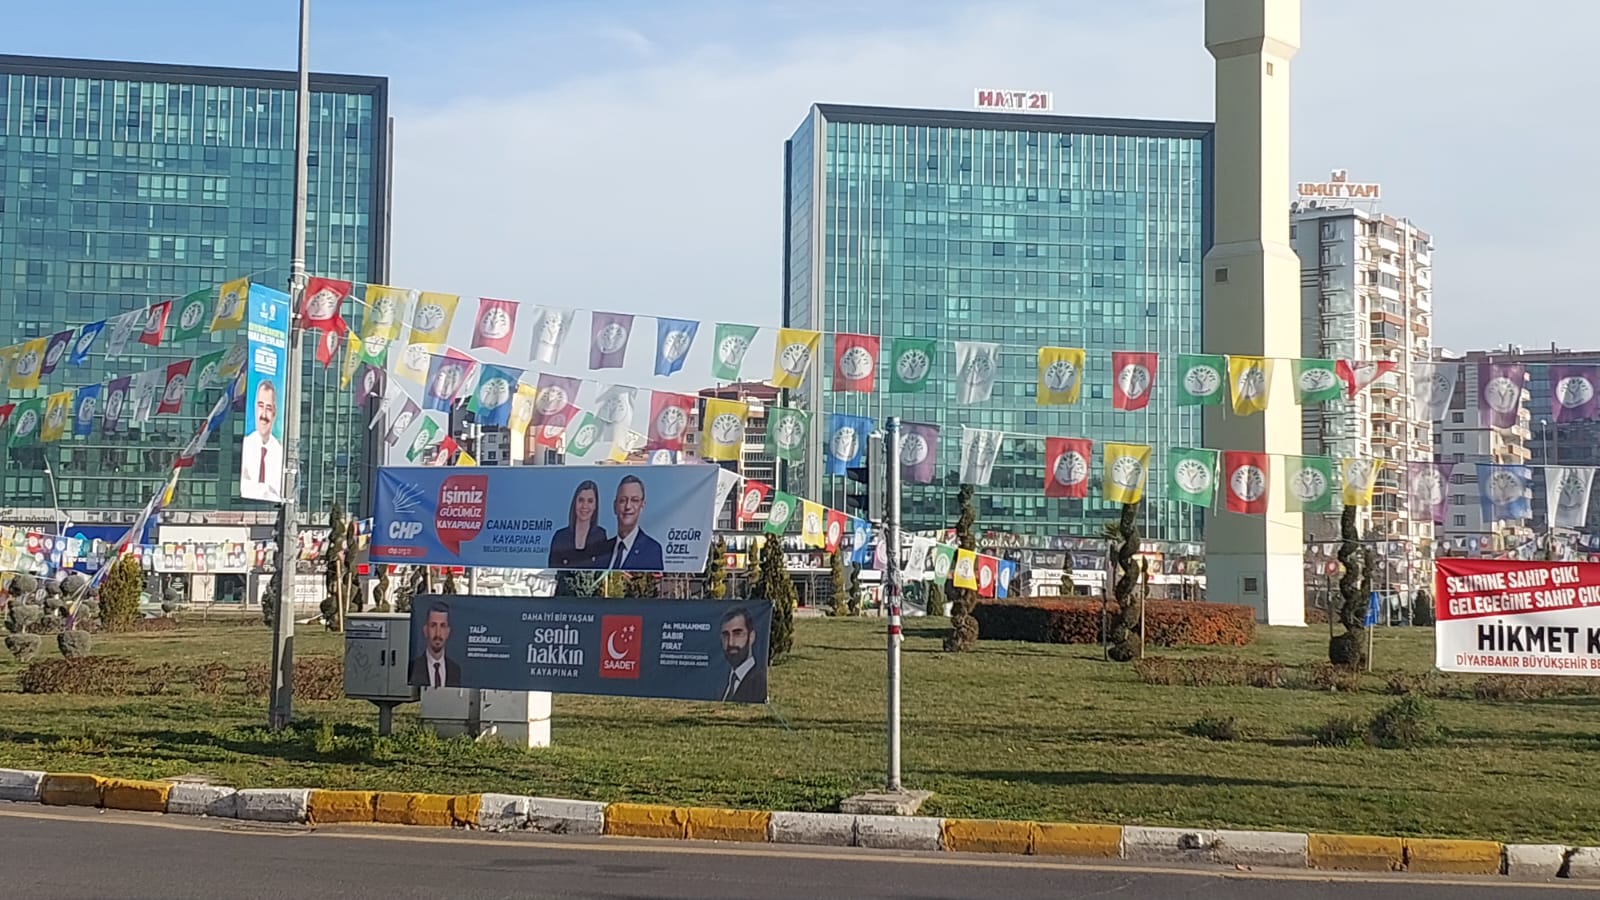 VİDEO - Diyarbakır'da Siyasi Partilerin Bayrakları ve posterleri süsleyen tek kavşak